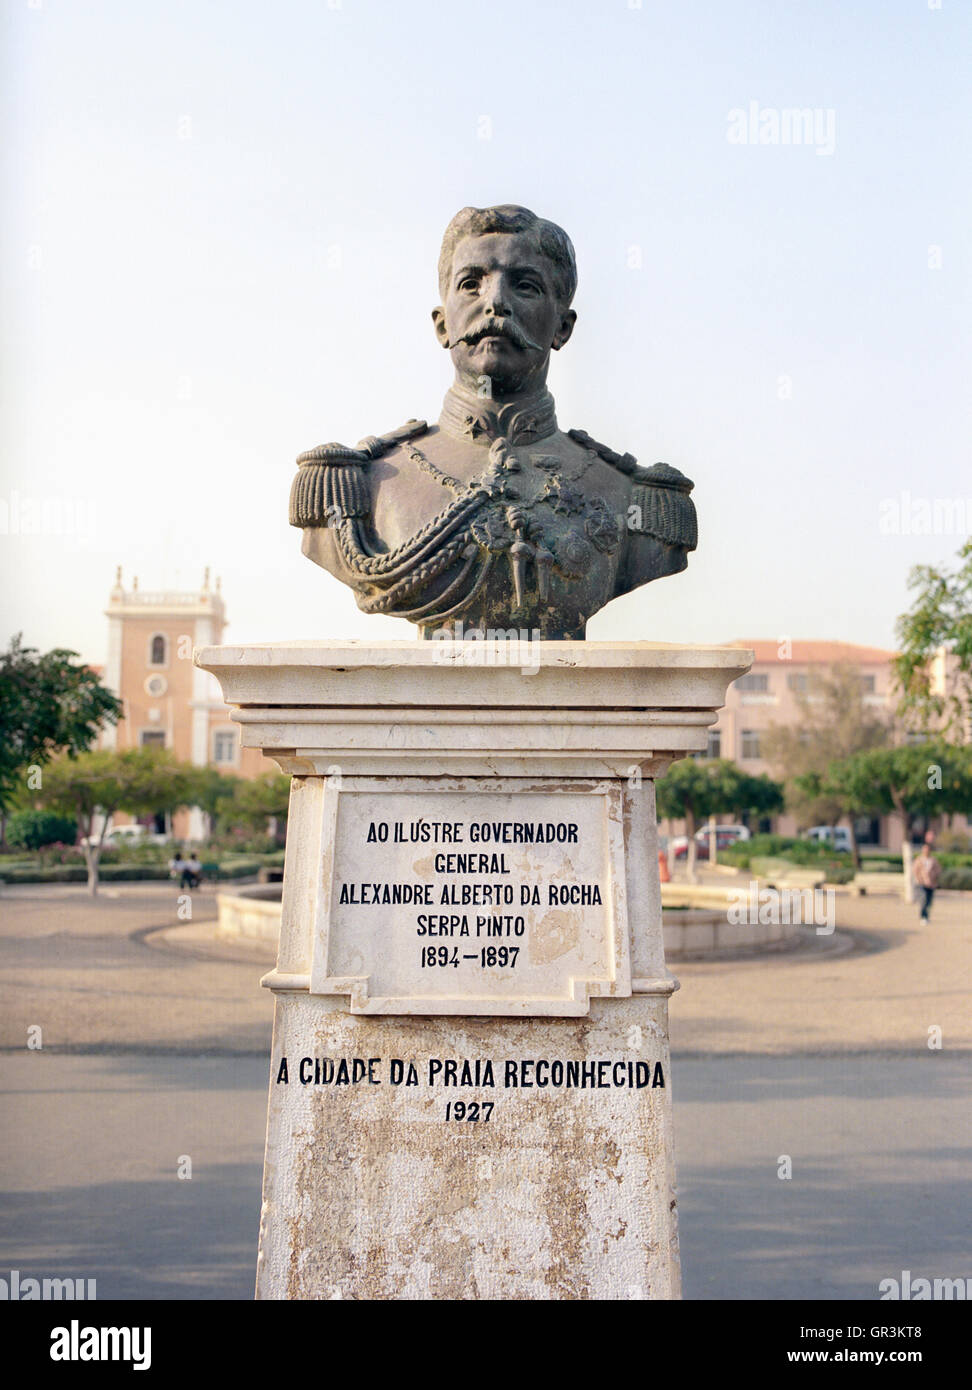 A sculpture of Governor General Alexandre Alberto Da Rocha de Serpa Pinto, Albuquerque Square, Praia, Santiago, Cape Verde Stock Photo